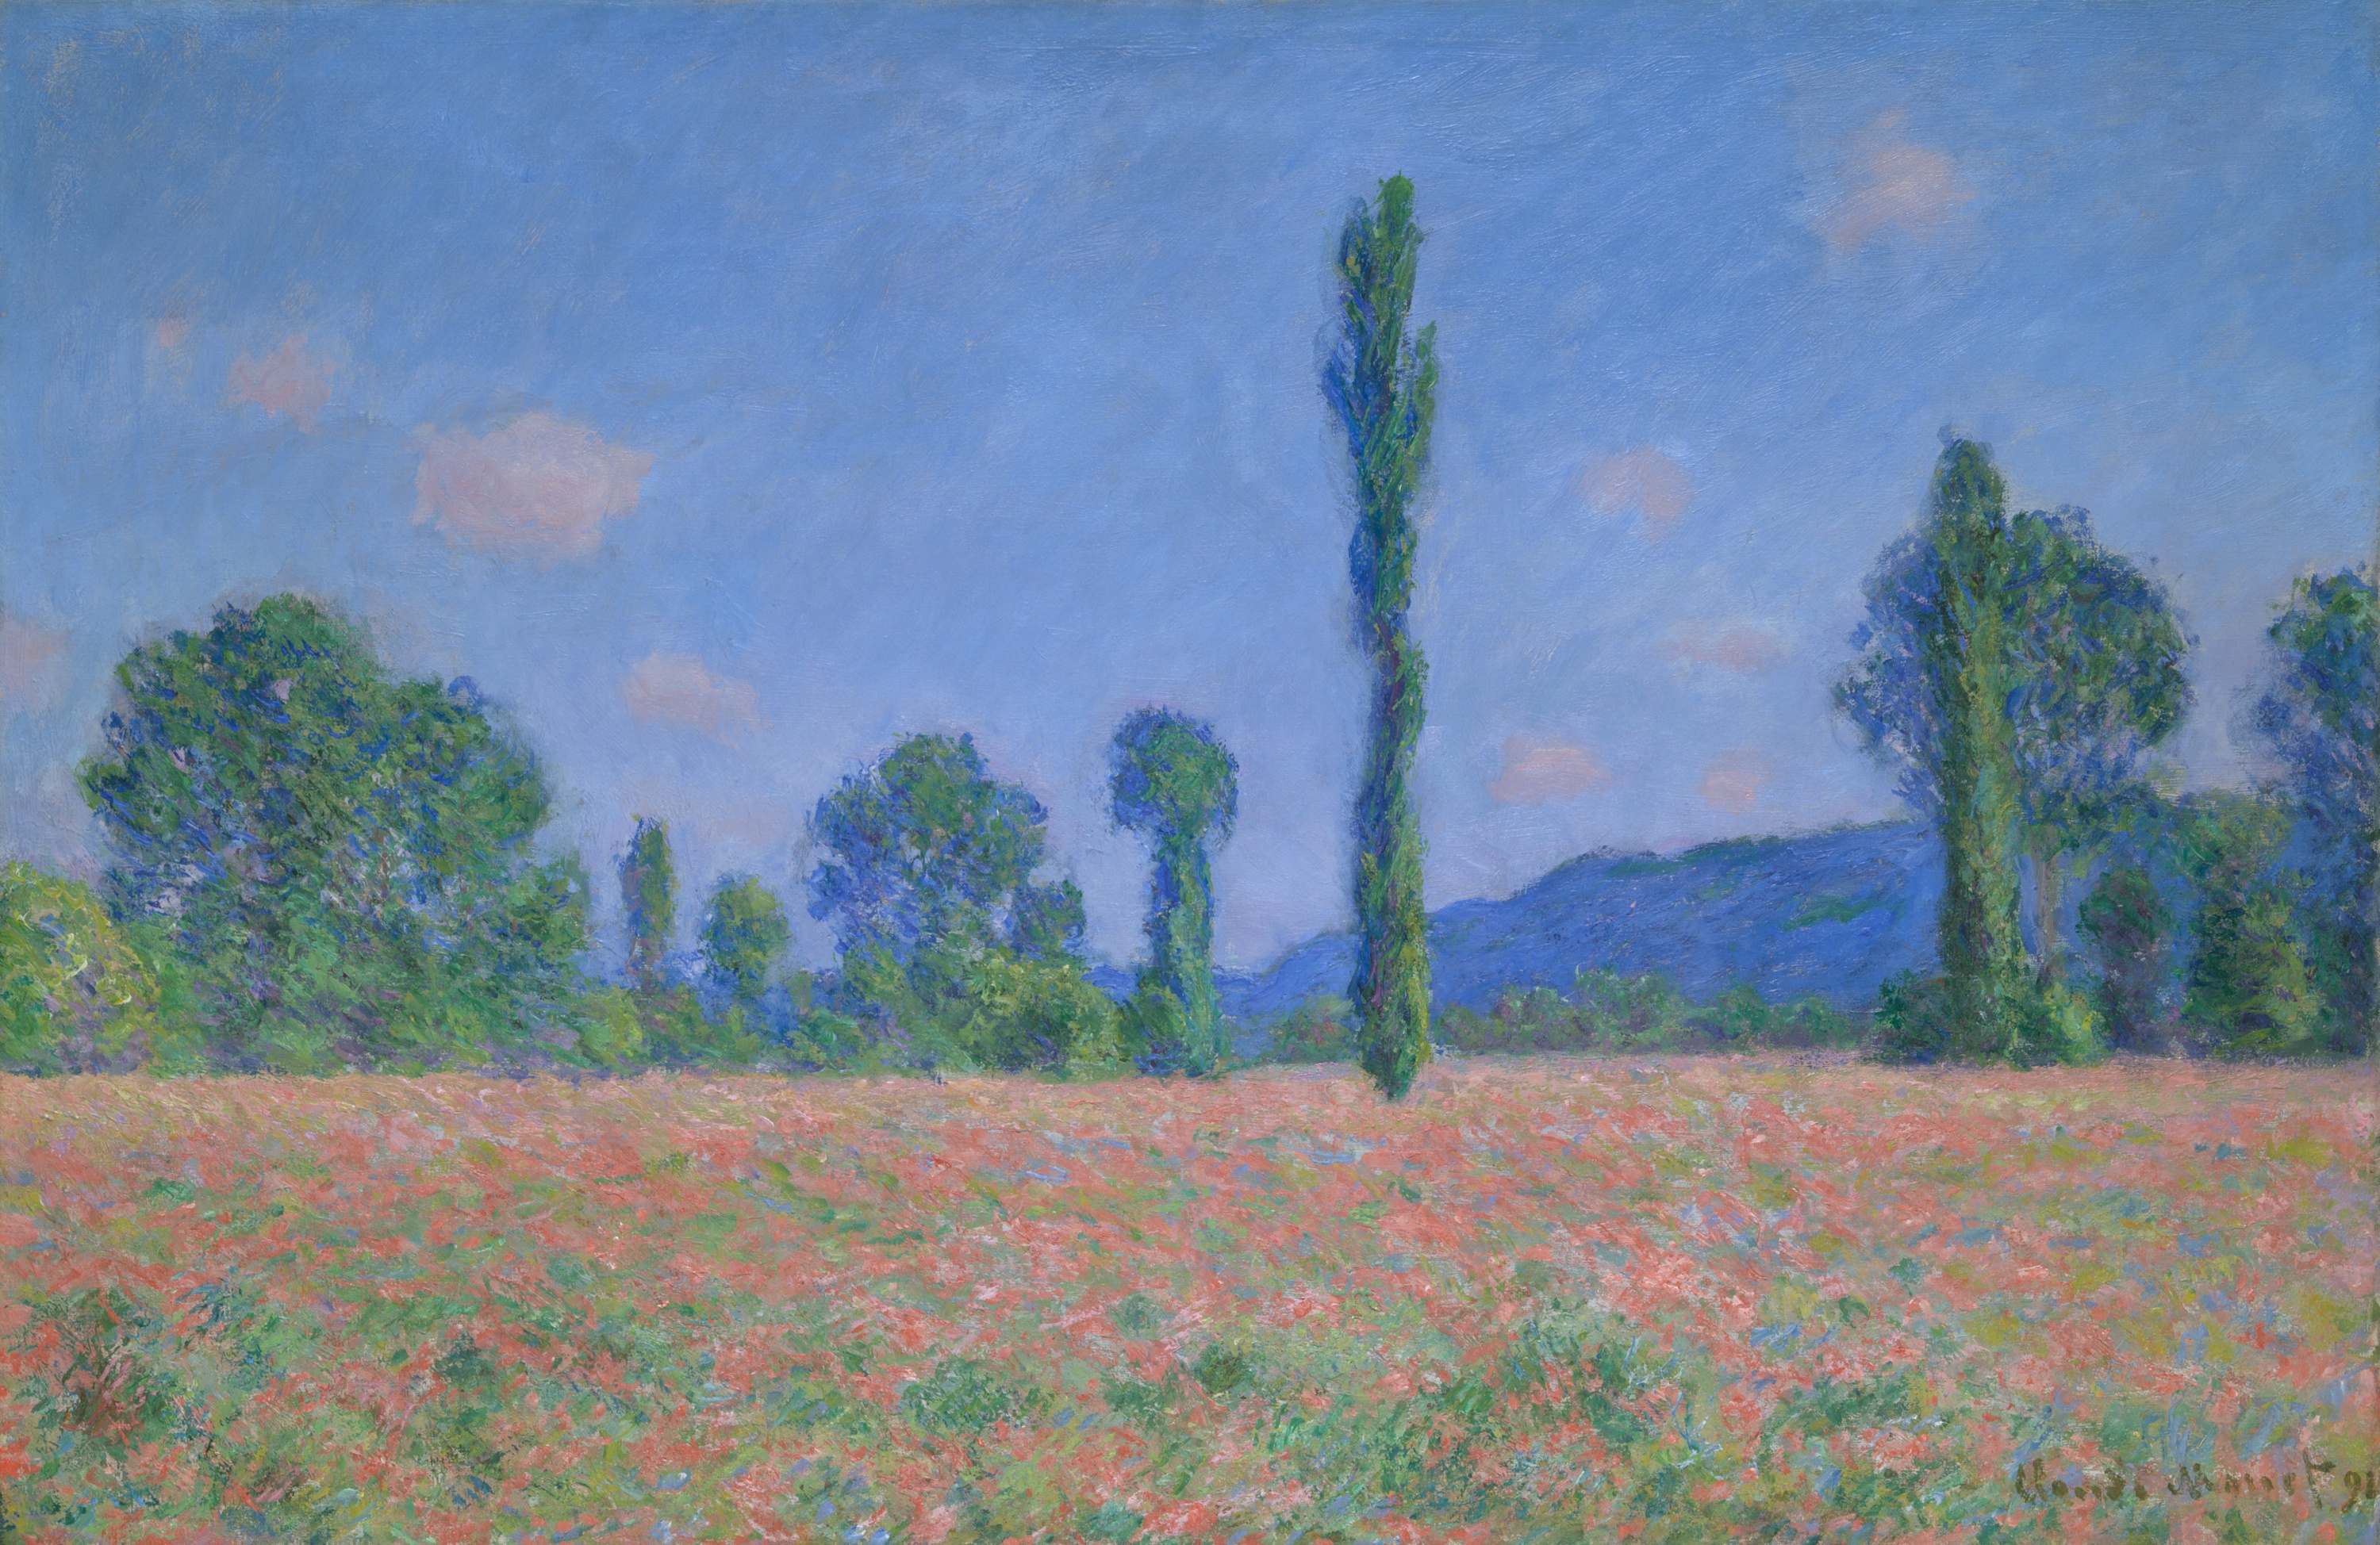 Маковое поле (Живерни) by Claude Monet - 1890/91 - 61,2 x 93,4 см 